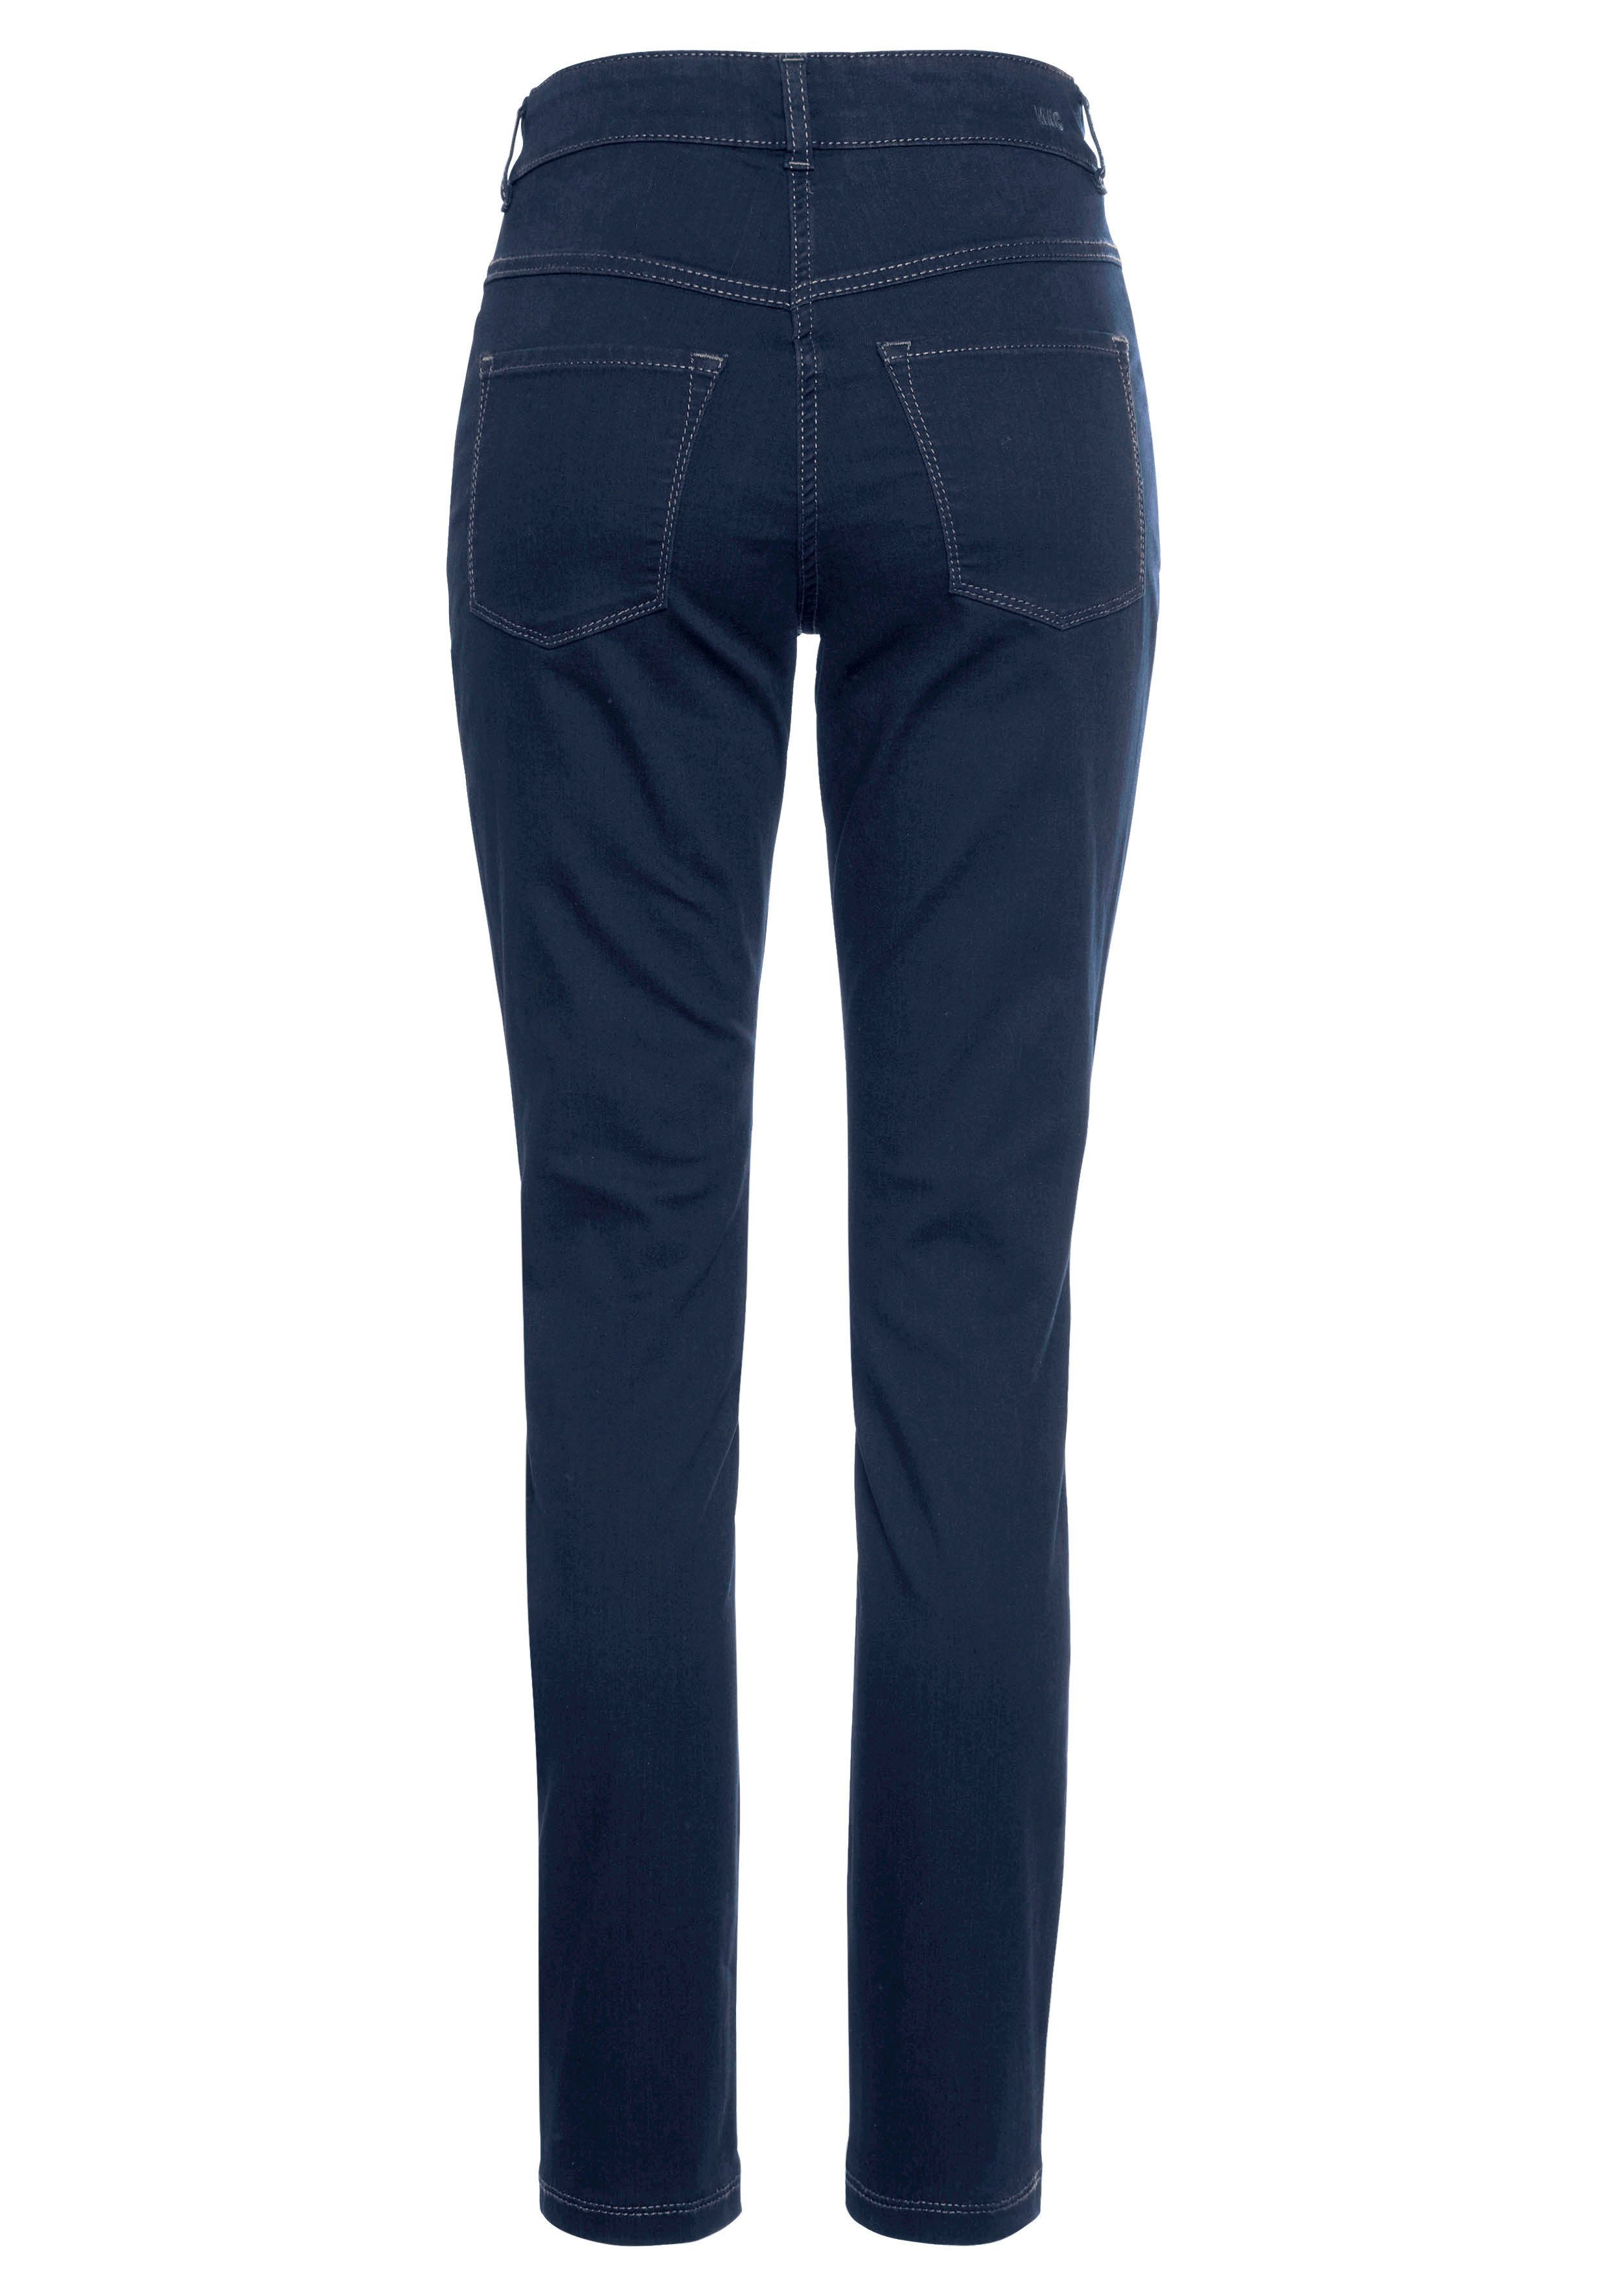 Skinny-fit-Jeans basic wash dark den blue Hiperstretch-Skinny Tag Power-Stretch ganzen bequem new Qualität MAC sitzt